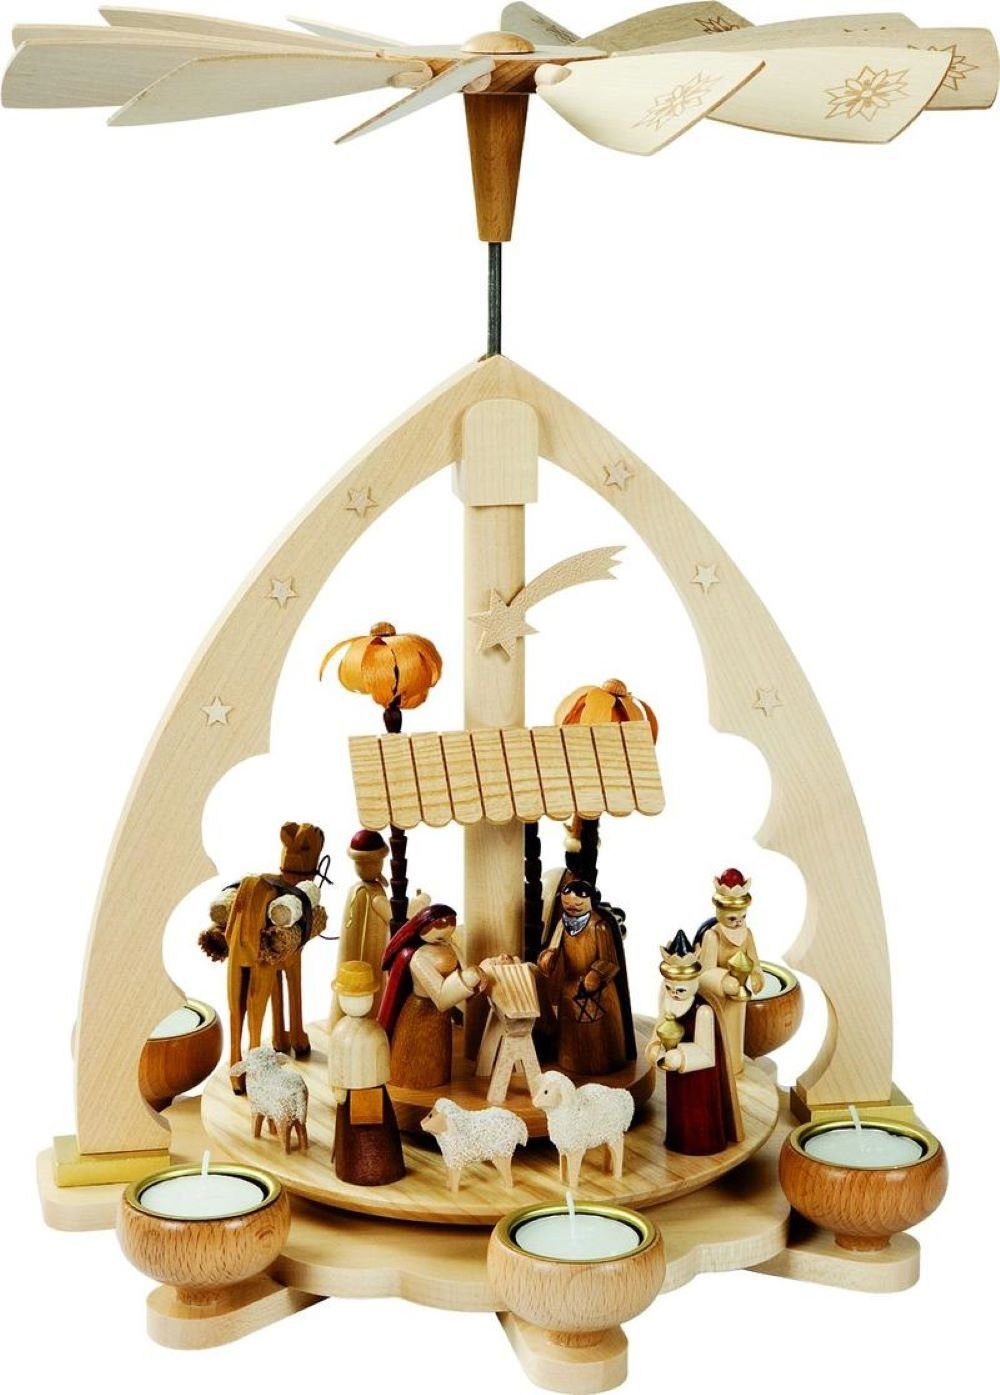 Richard Glaesser Weihnachtspyramide Teelichtpyramide Heilige Familie natur für Teelichte, Höhe 40 cm, Handwerkskunst aus dem Erzgebirge